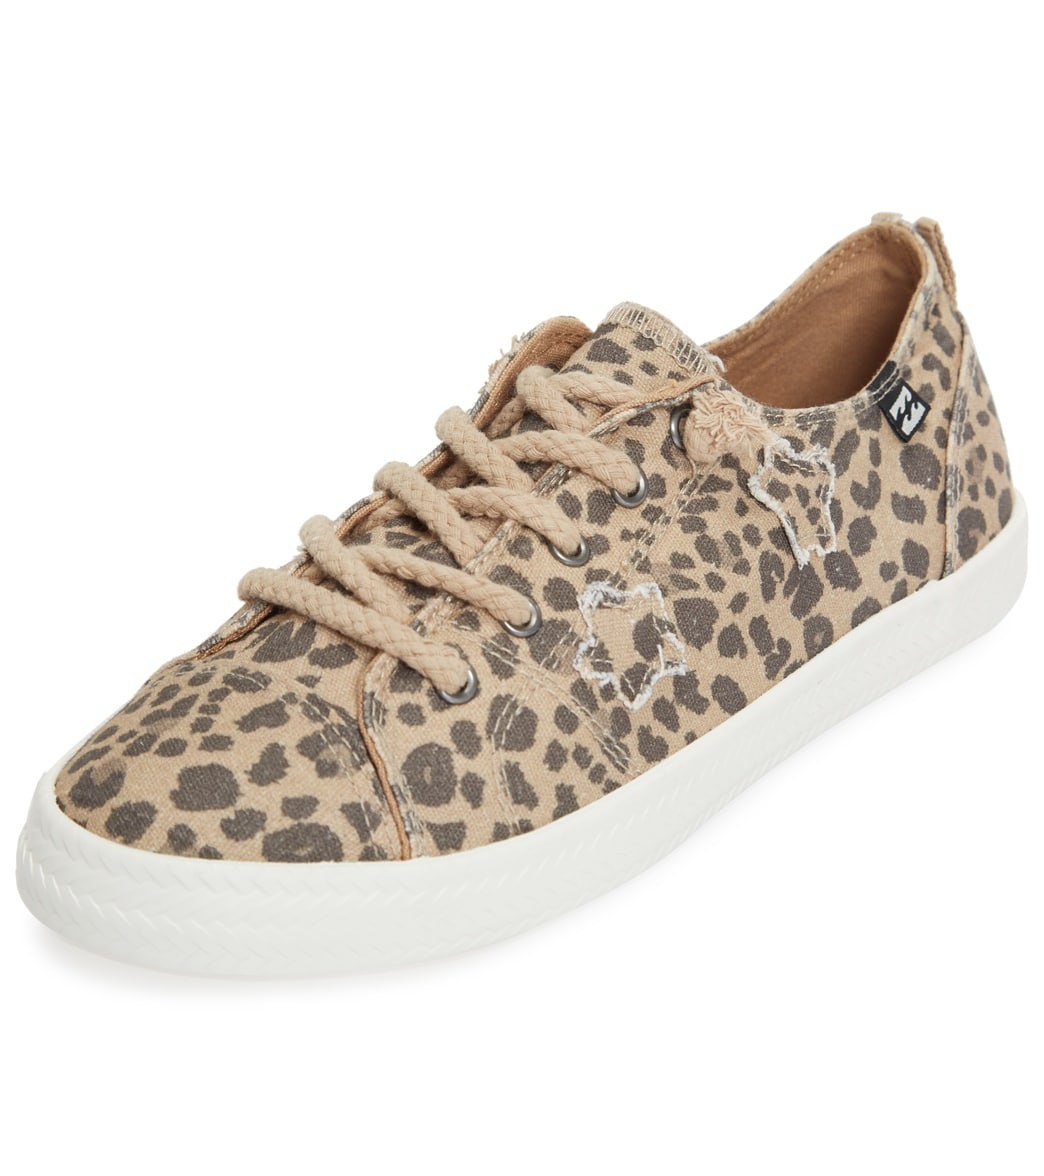 Billabong Women's Marina Casual Shoe - Cheetah 7 Cotton - Swimoutlet.com